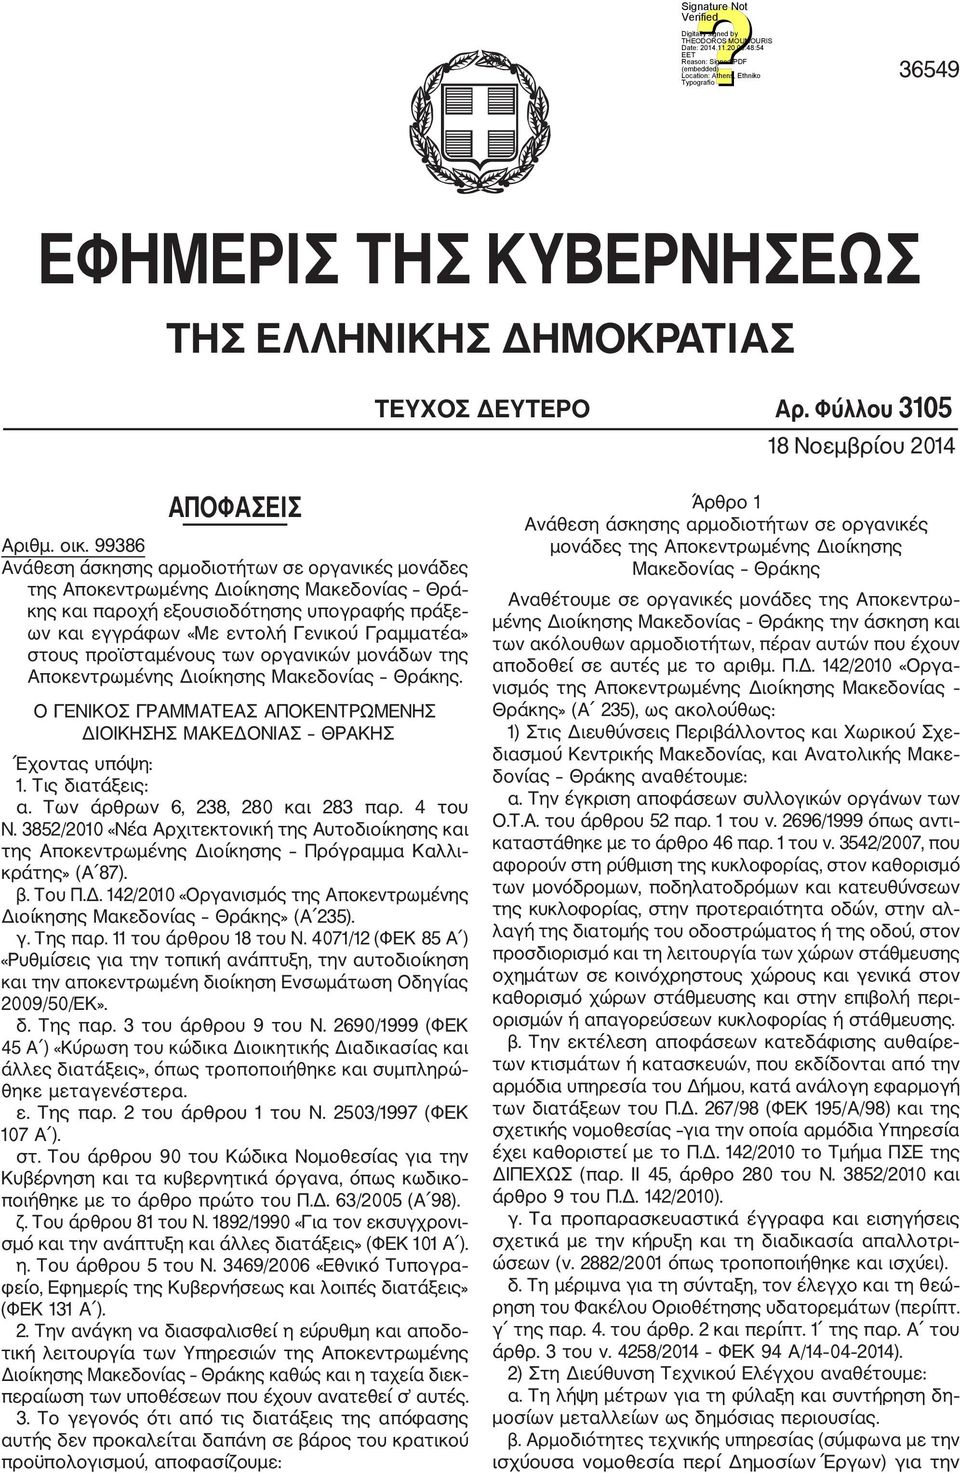 προϊσταμένους των οργανικών μονάδων της Αποκεντρωμένης Διοίκησης Μακεδονίας Θράκης. Ο ΓΕΝΙΚΟΣ ΓΡΑΜΜΑΤΕΑΣ ΑΠΟΚΕΝΤΡΩΜΕΝΗΣ ΔΙΟΙΚΗΣΗΣ ΜΑΚΕΔΟΝΙΑΣ ΘΡΑΚΗΣ Έχοντας υπόψη: 1. Τις διατάξεις: α.